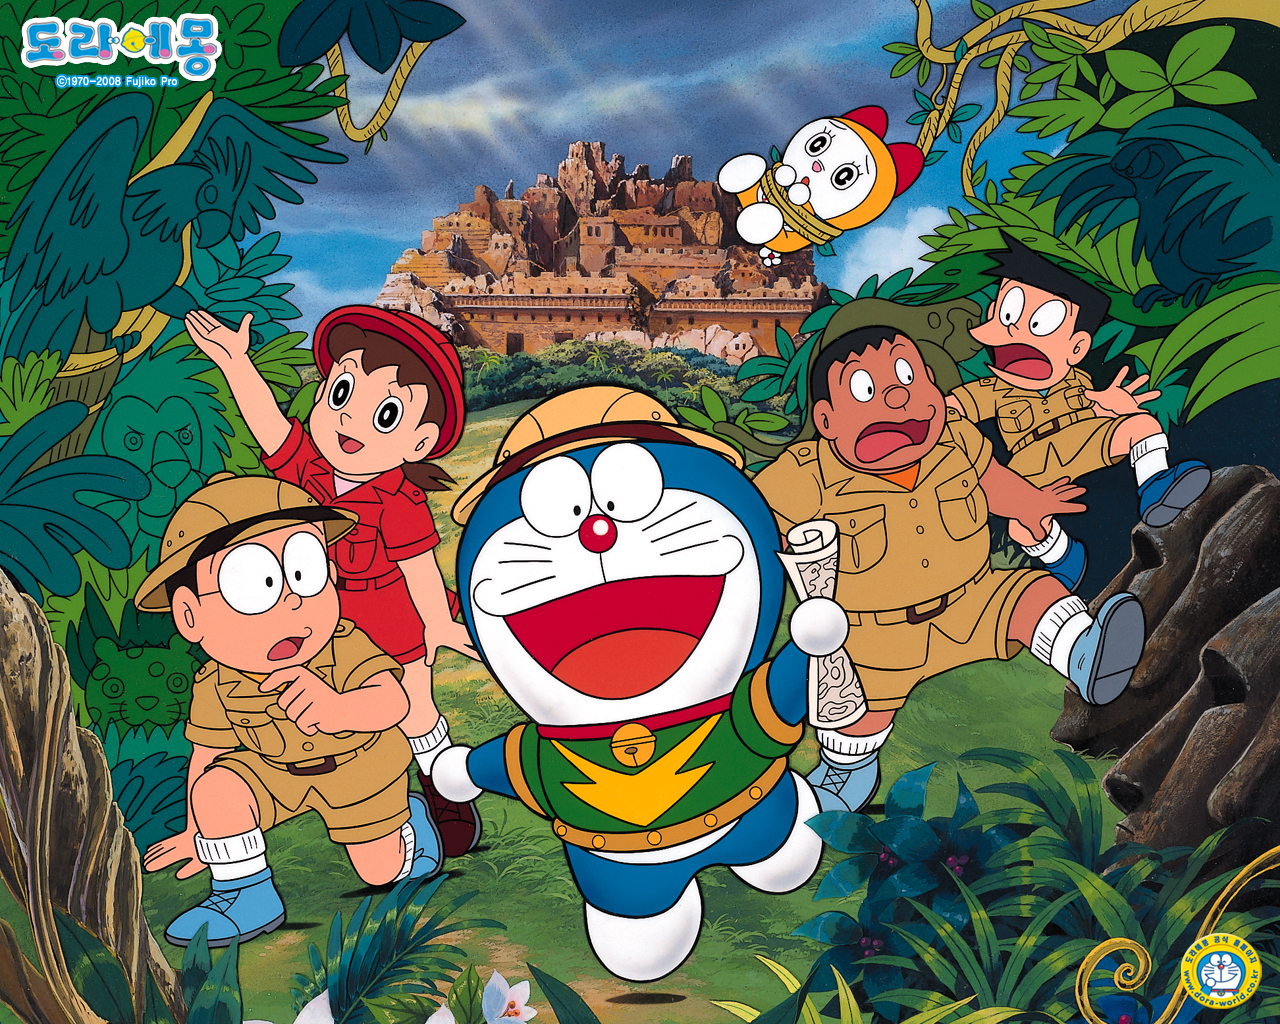 Anime wallpaper, Doraemon: Bạn là một tín đồ của anime và đặc biệt là Doraemon? Dàn hình nền Doraemon với phong cách anime sẽ làm bạn phấn khích! Vào cuối ngày, không gì tuyệt vời hơn là đổi gió với những hình nền anime Doraemon đáng yêu như vậy.